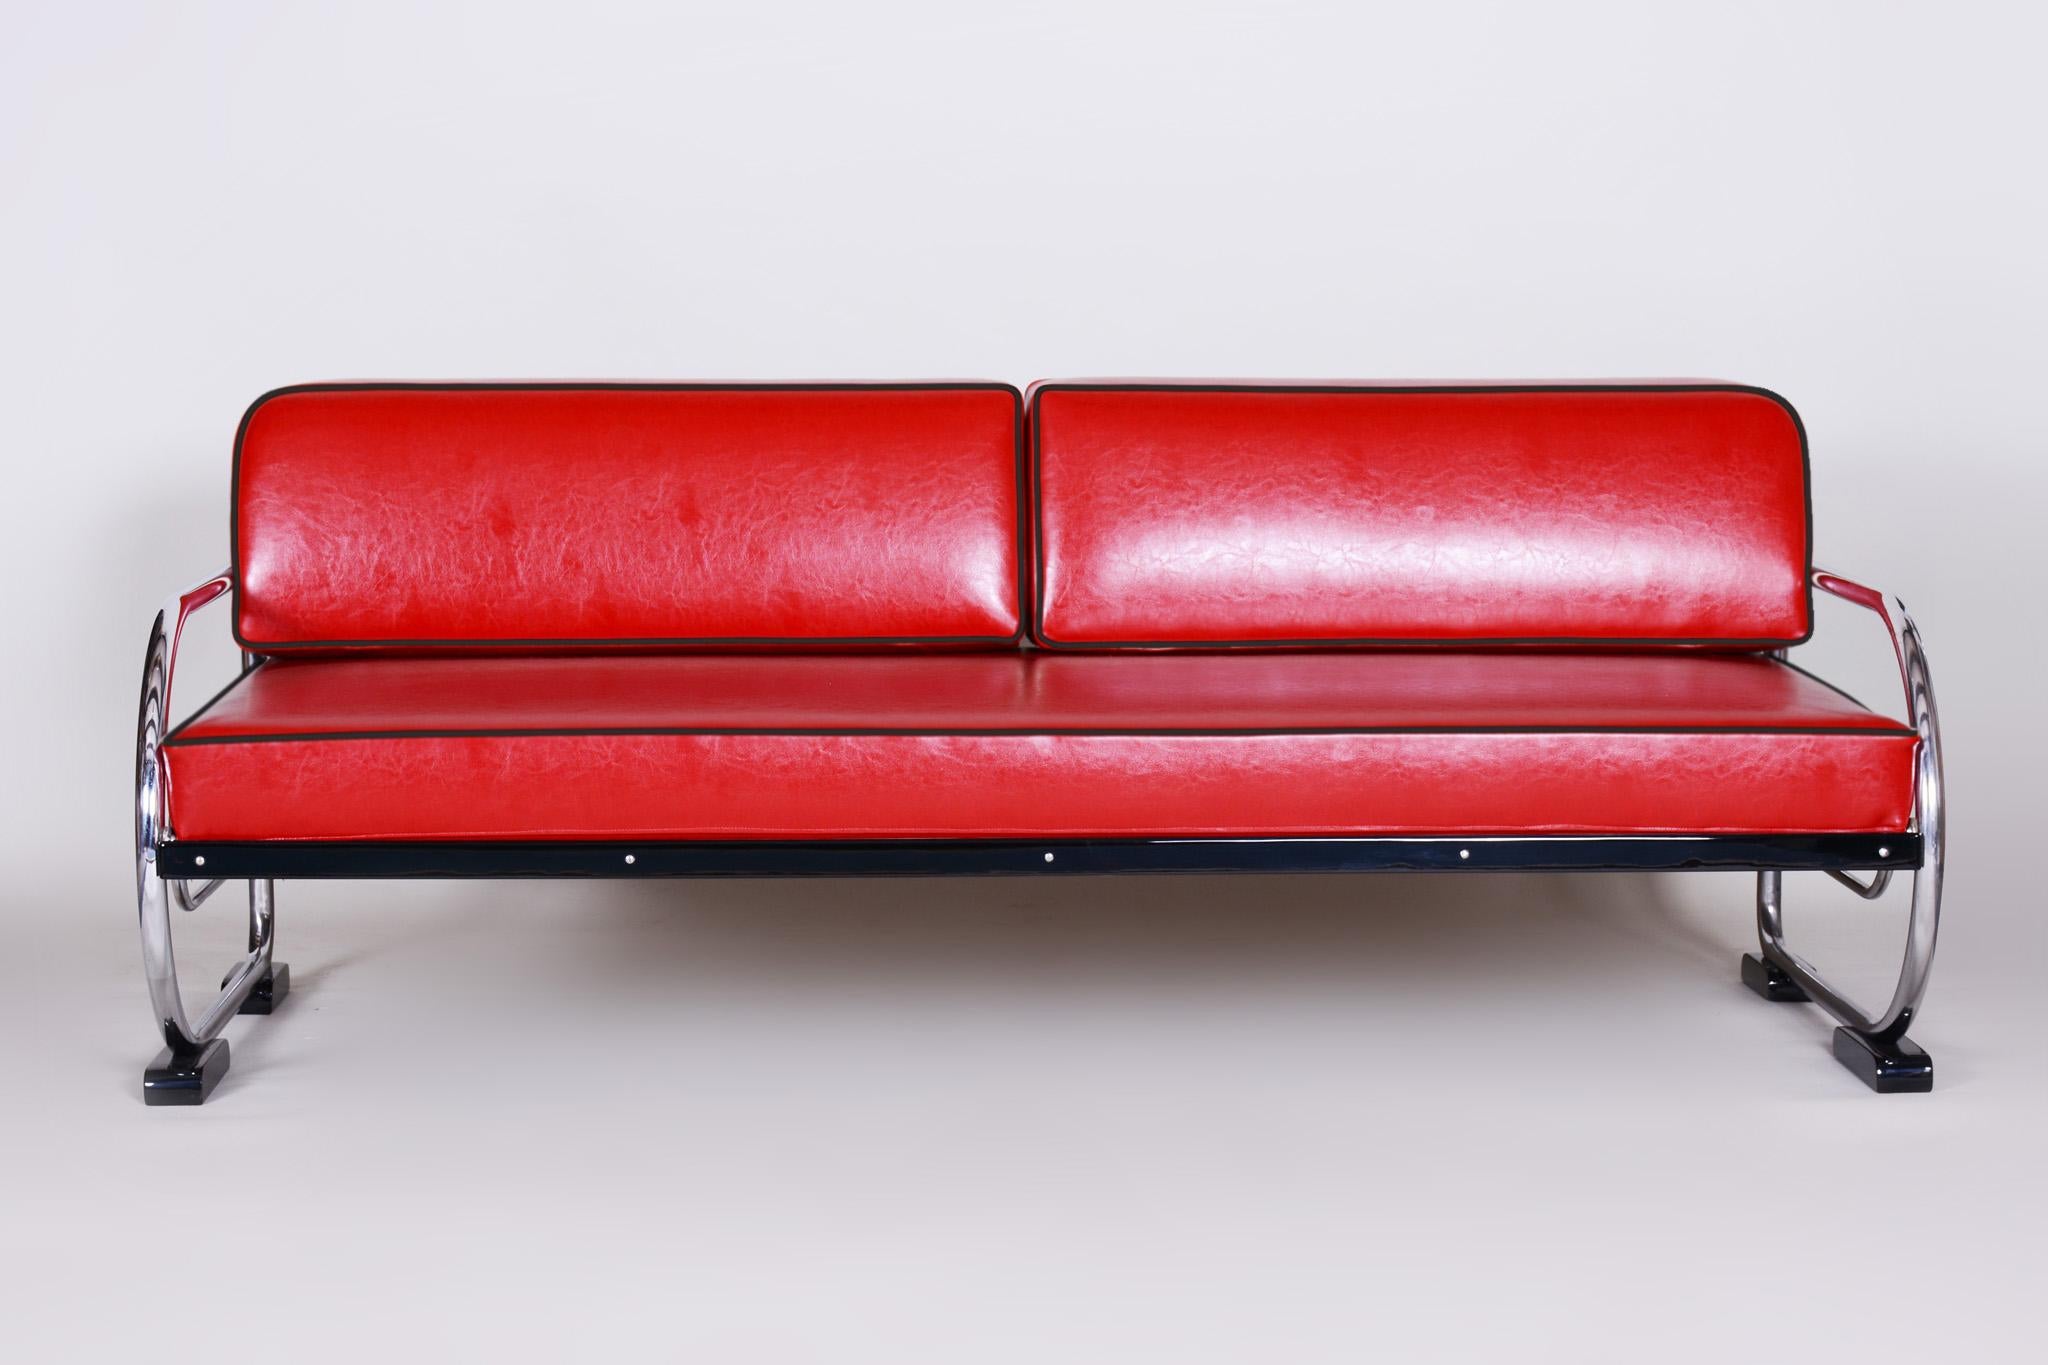 Canapé de style Bauhaus avec une structure en bois laqué et en acier tubulaire chromé.
Fabriqué par Robert Slezák dans les années 1930.
L'acier tubulaire chromé est en parfait état d'origine.
Tapissé de cuir rouge de haute qualité.
Source :